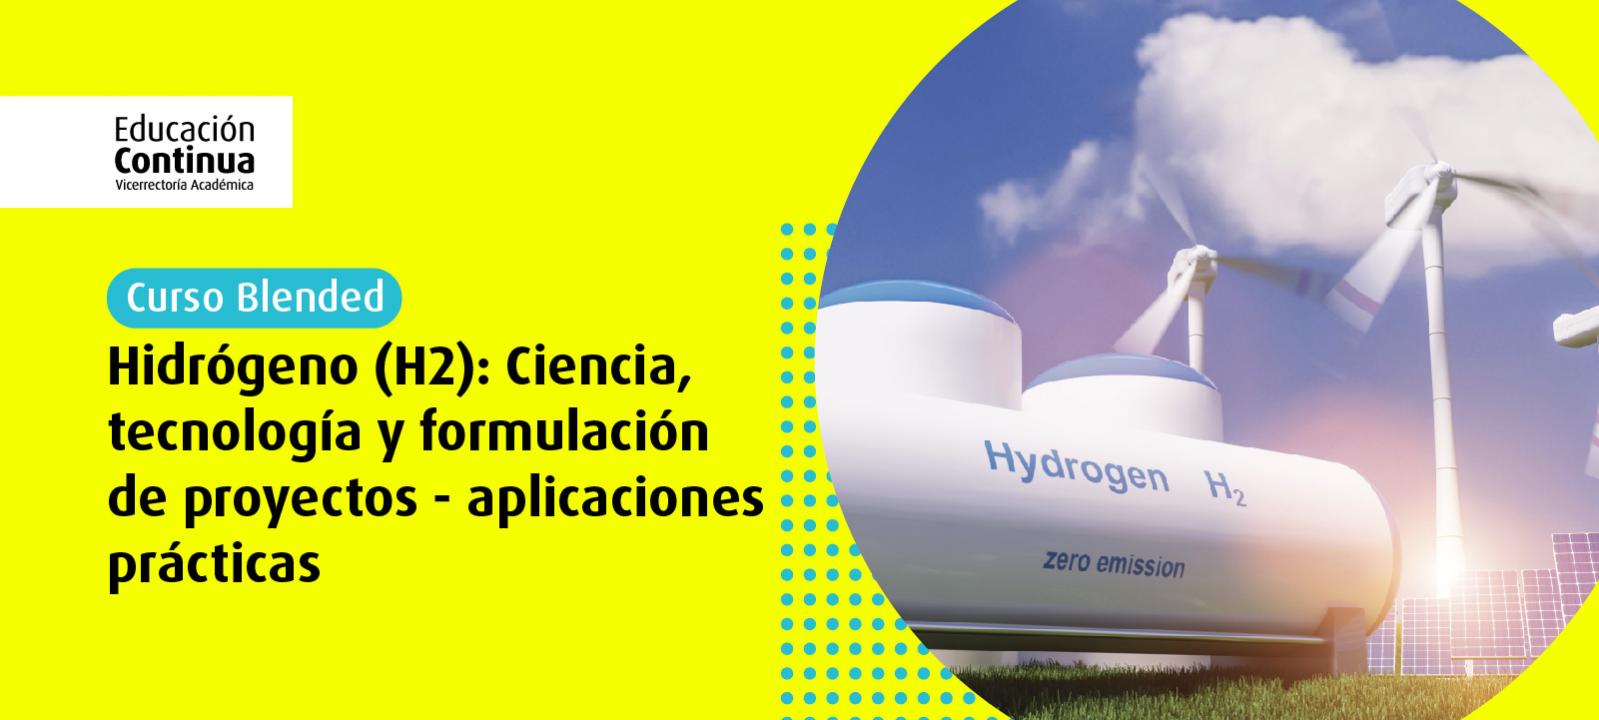 Curso blended | Hidrógeno (H2): Ciencia, tecnología y formulación de proyectos